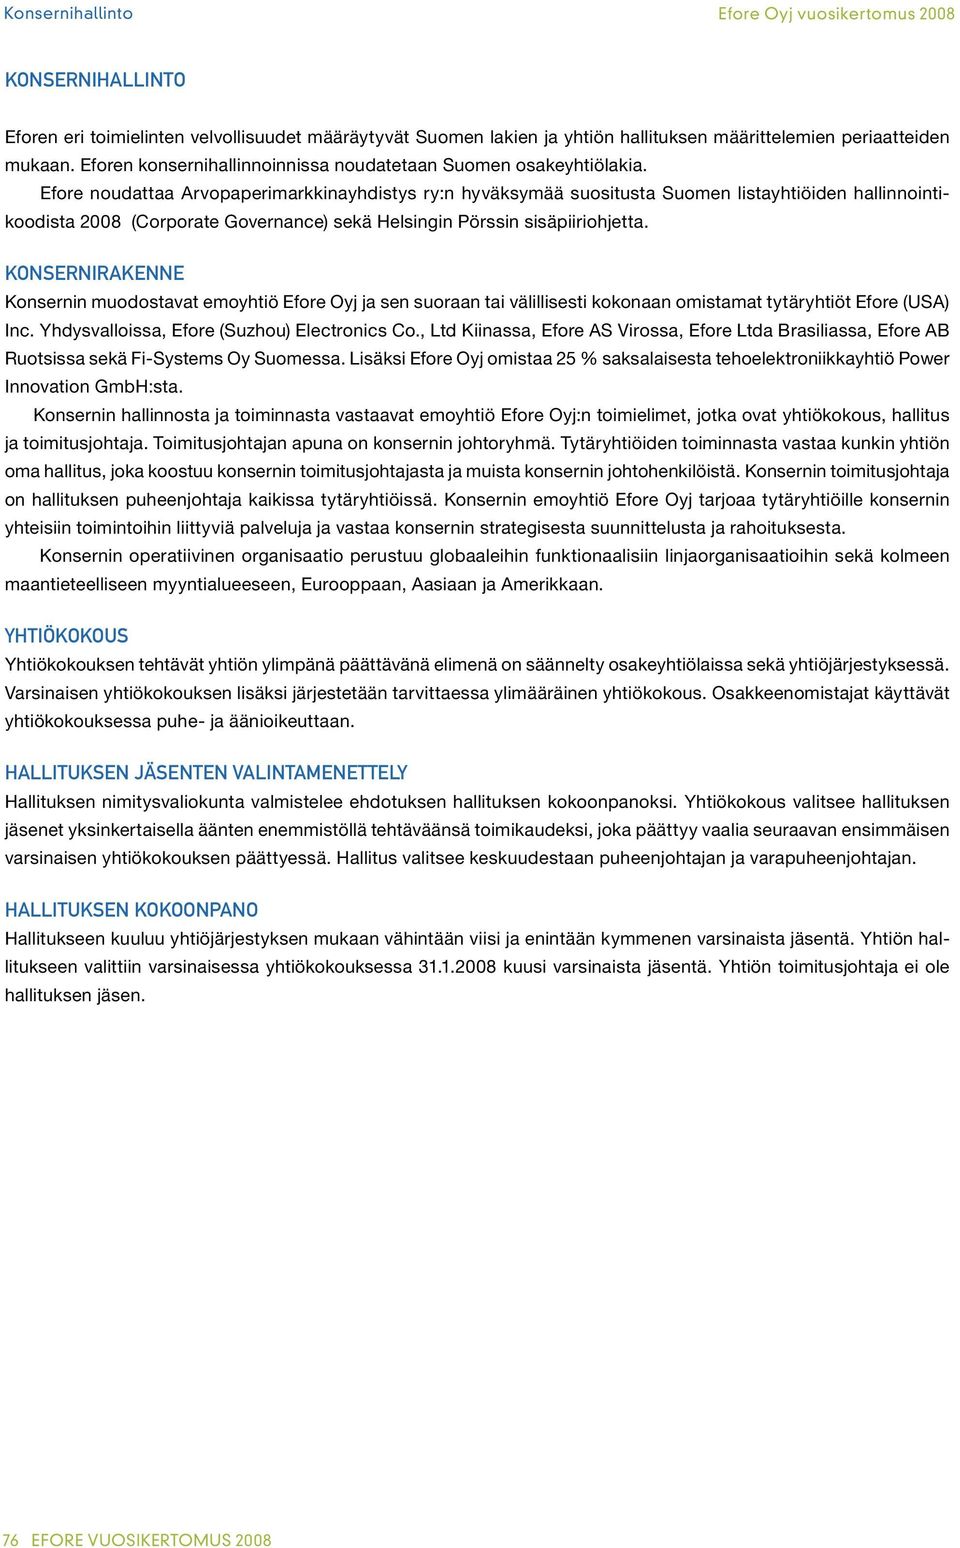 Efore noudattaa Arvopaperimarkkinayhdistys ry:n hyväksymää suositusta Suomen listayhtiöiden hallinnointikoodista 2008 (Corporate Governance) sekä Helsingin Pörssin sisäpiiriohjetta.